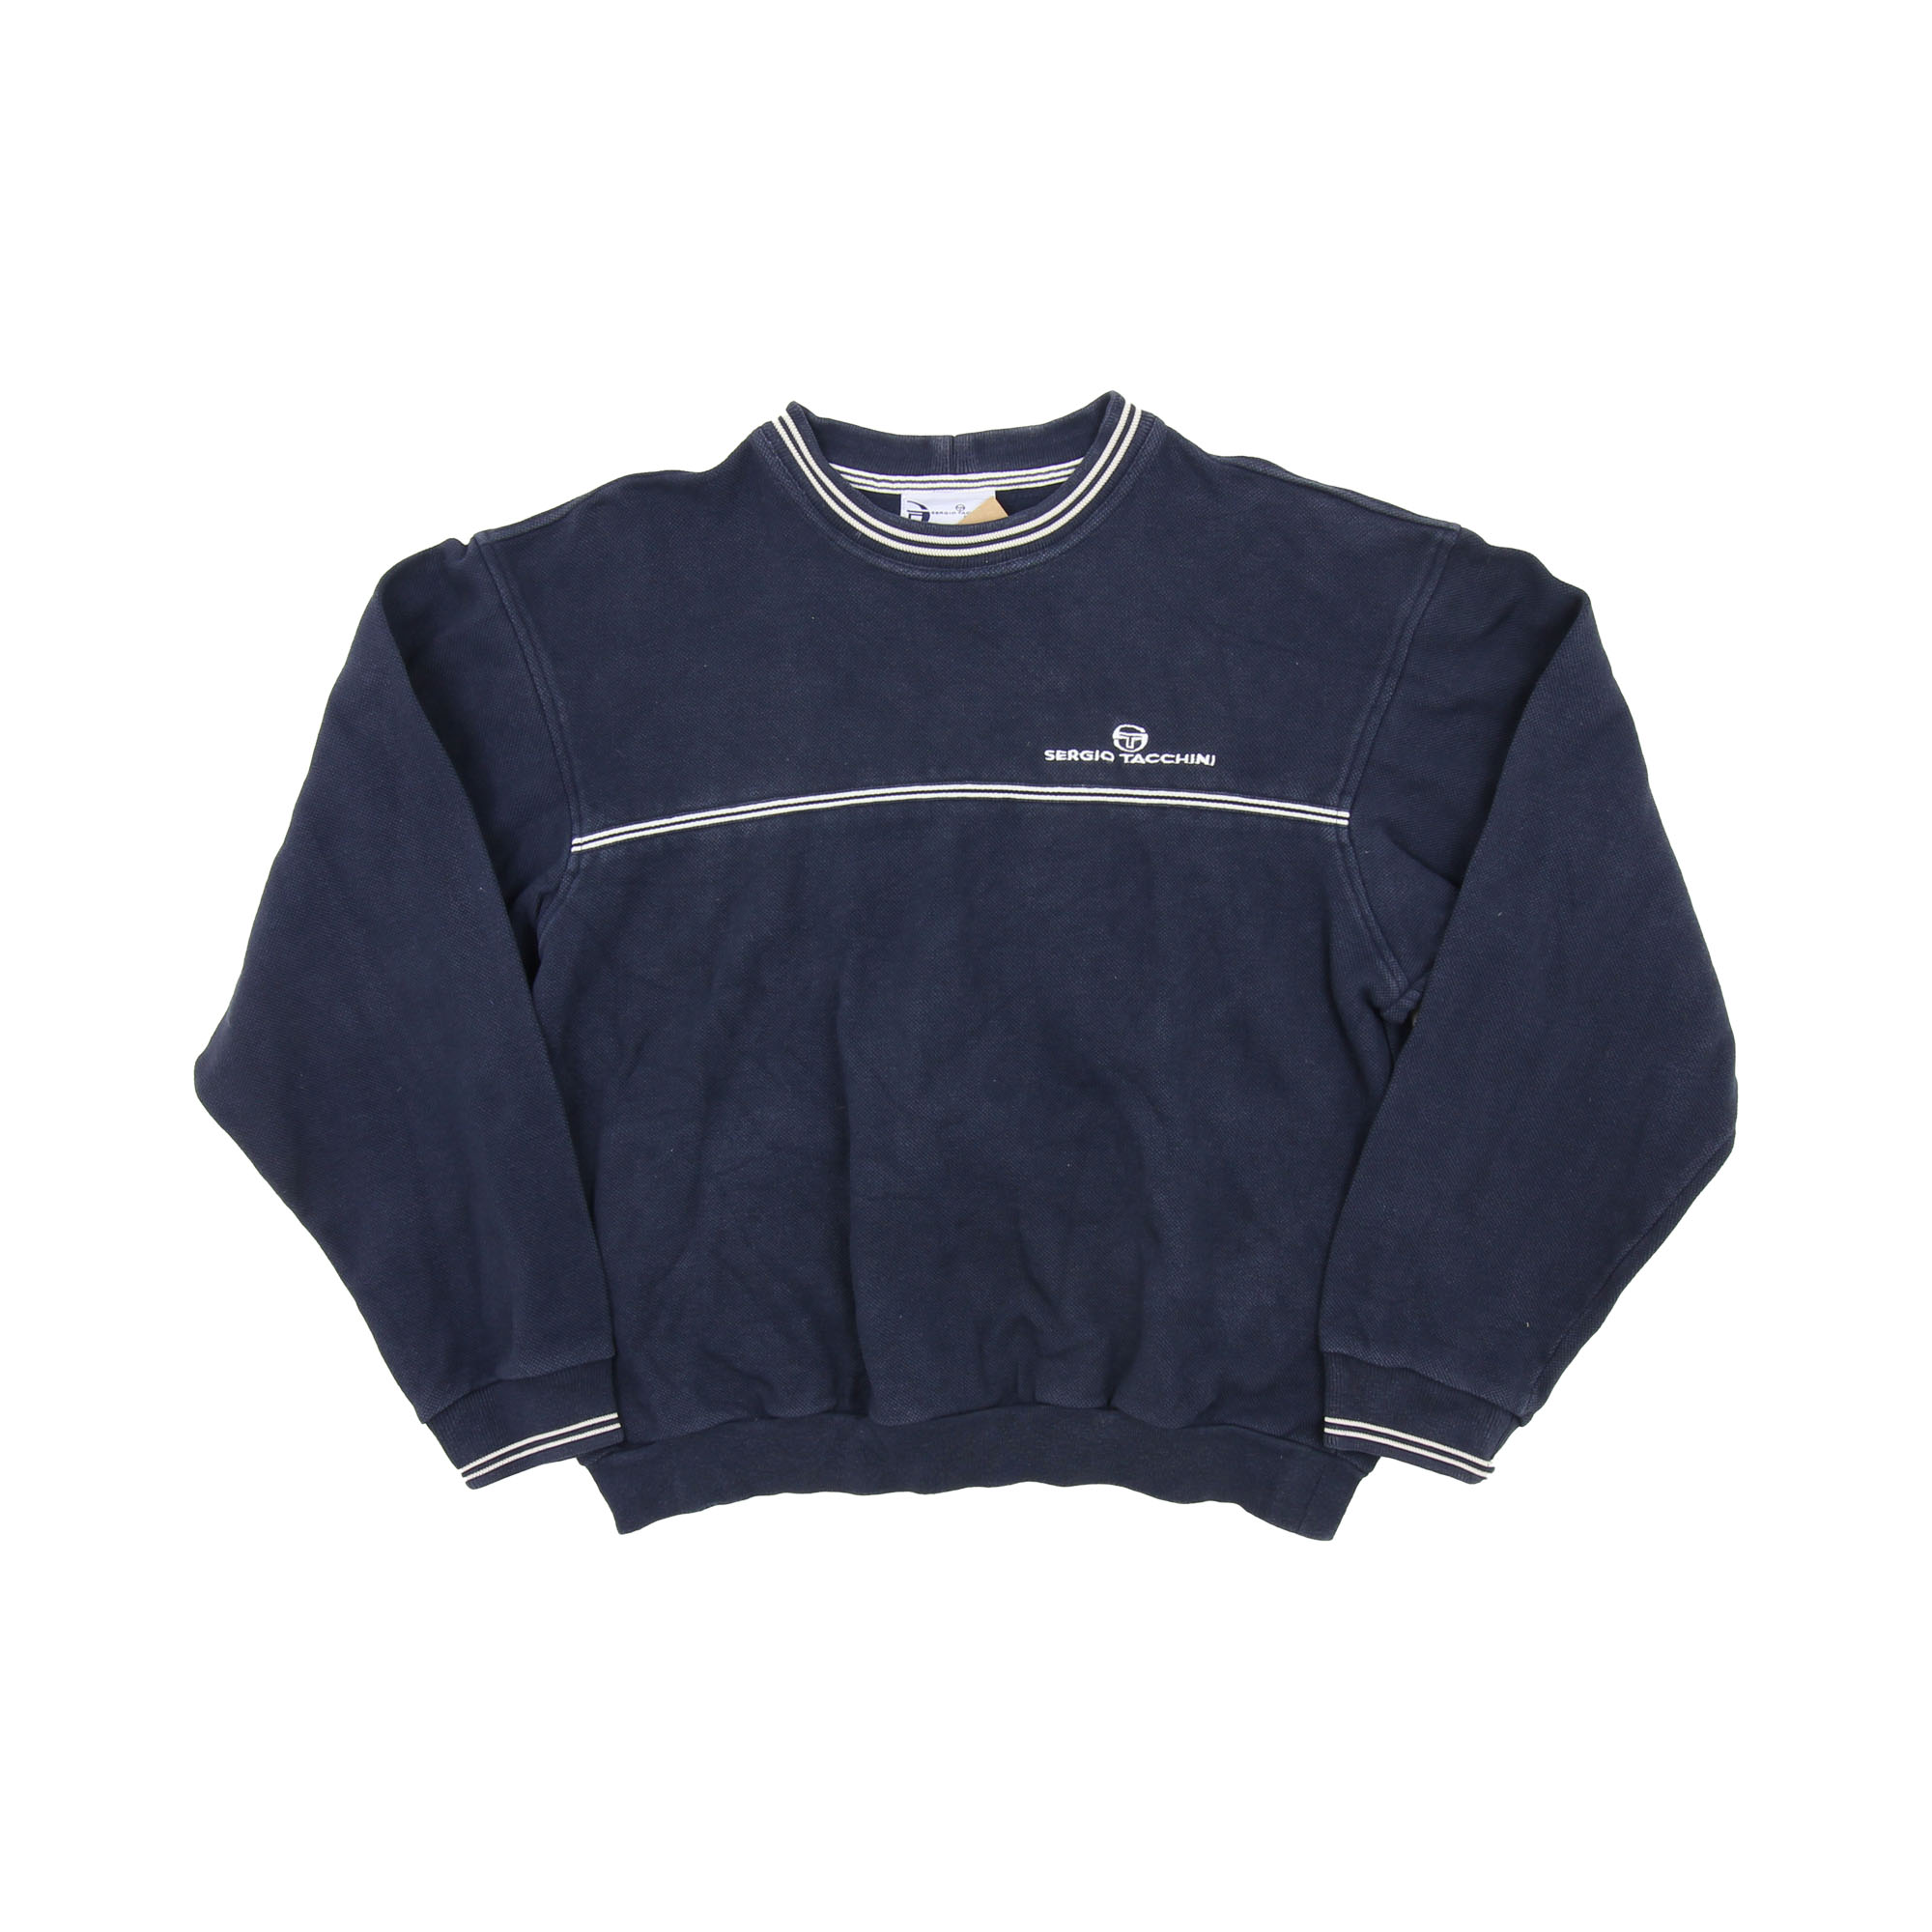 Sergio Tacchini Vintage Sweatshirt -  S